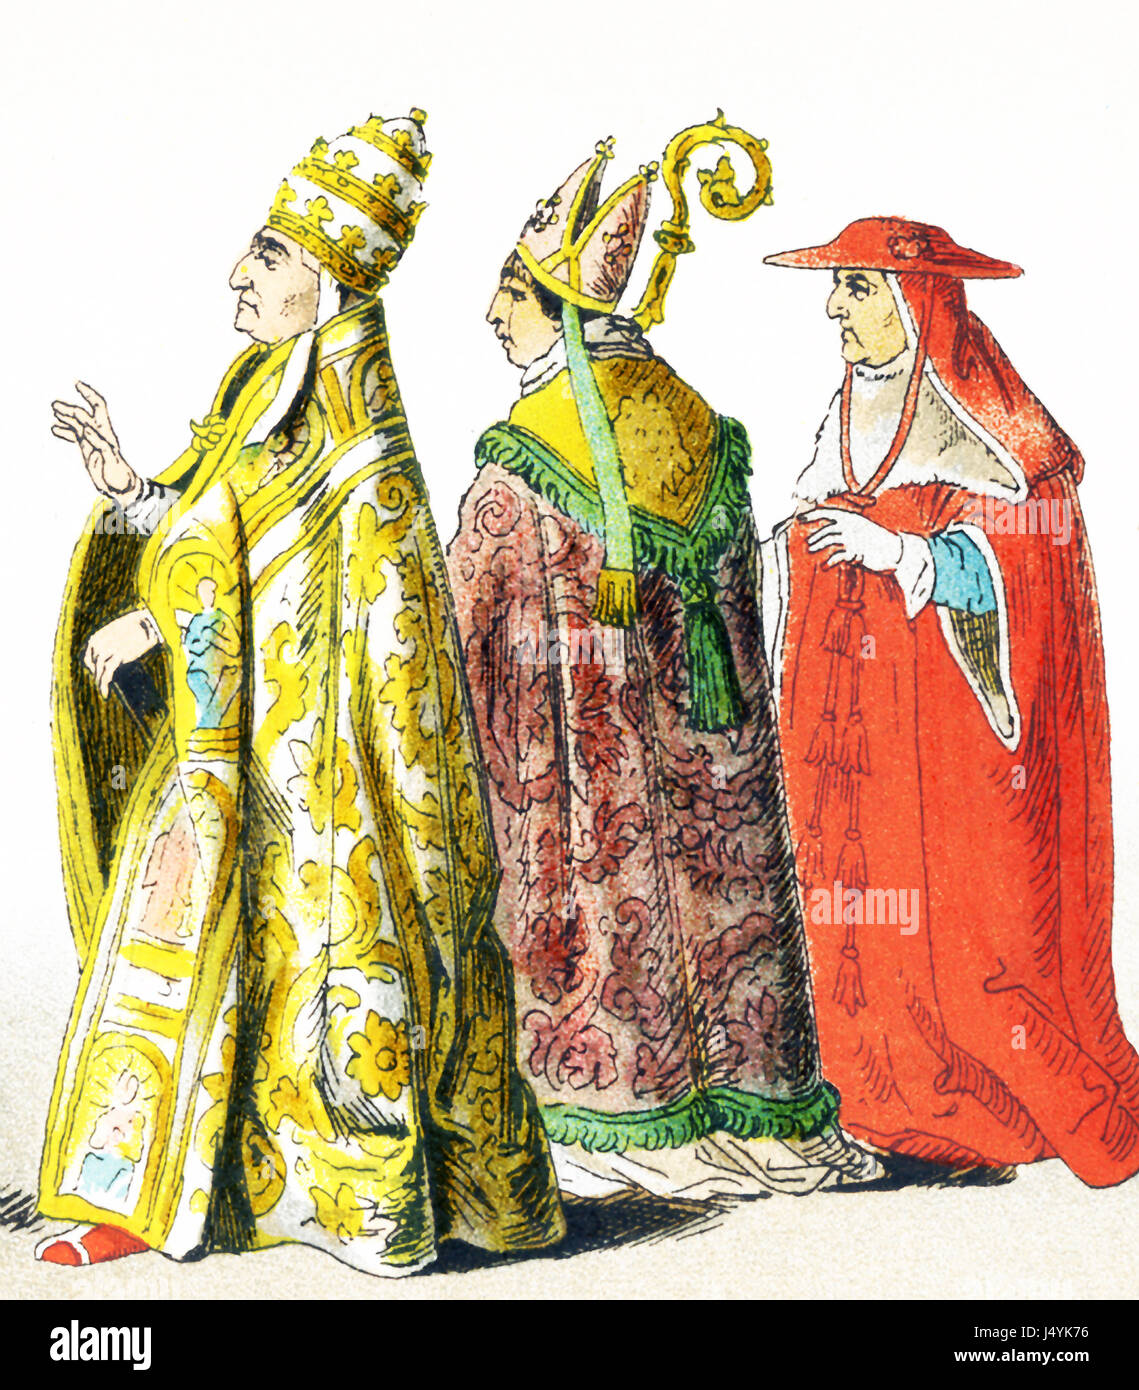 Le figure raffigurate qui rappresentare gli italiani attorno al 1500 D.C. Essi sono da sinistra a destra: il papa Alessandro VI, vescovo, Cardinale. L'illustrazione risale al 1882. Foto Stock